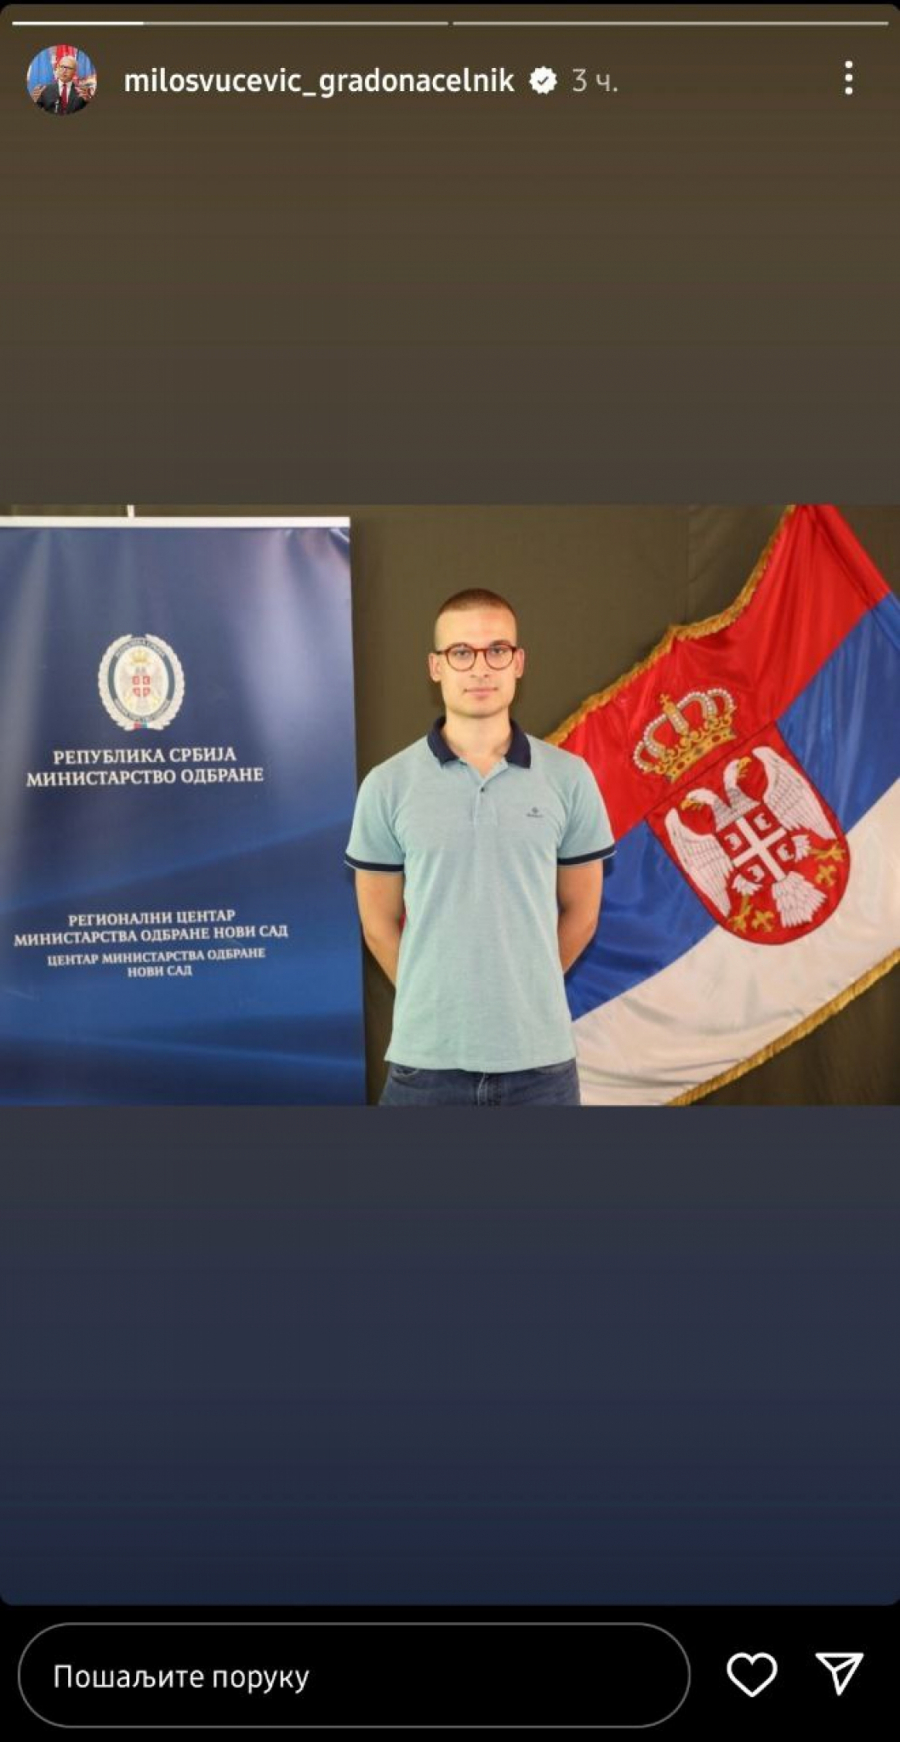 KO SME, TAJ MOŽE Sin MIloša Vučevića prvi među kandidatima za dobrovoljno služenje vojnog roka (FOTO)